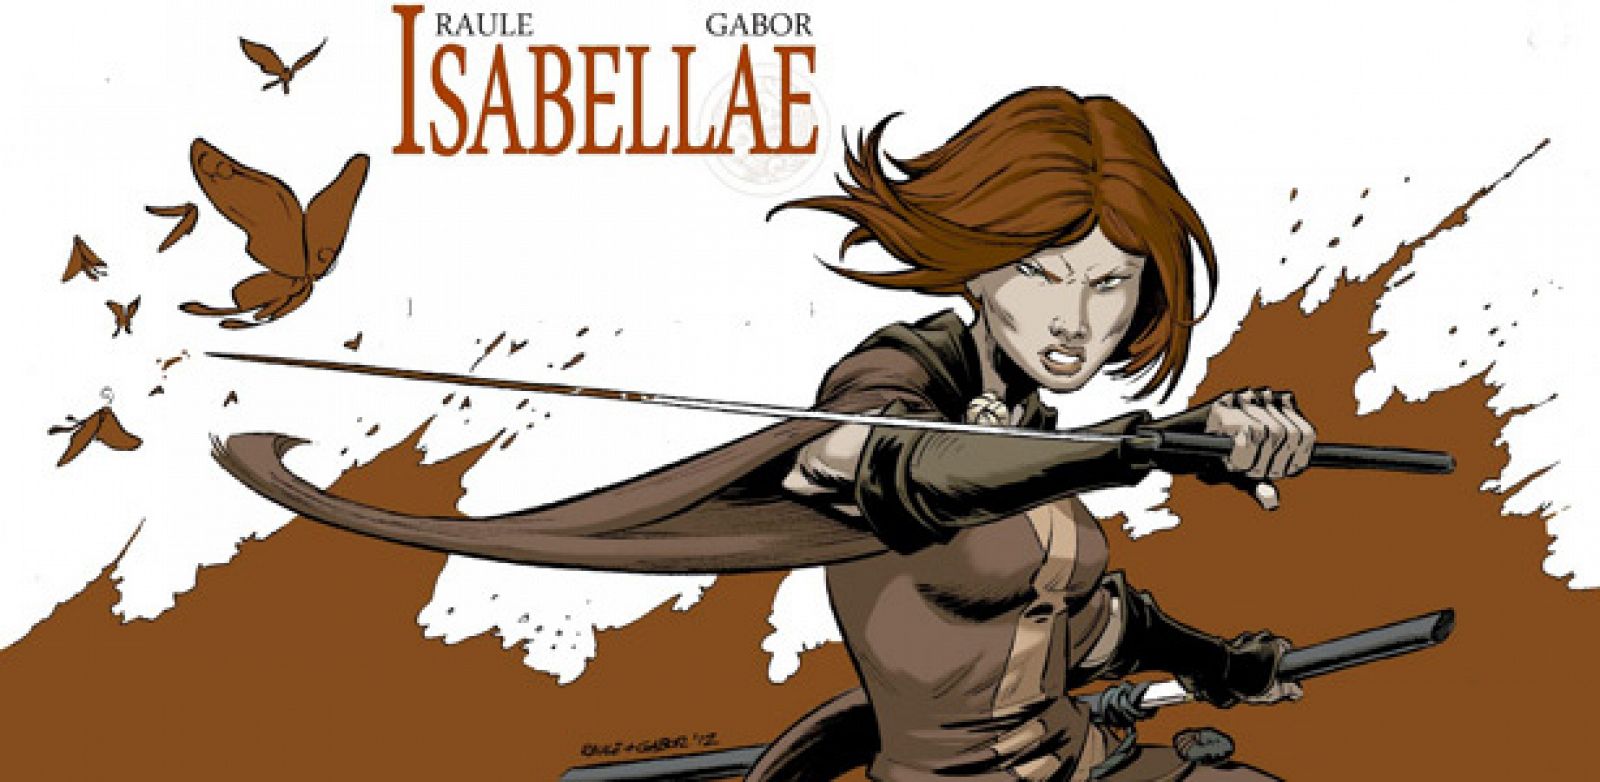 Imagen promocional de 'Isabellae', de Raule y Gabor